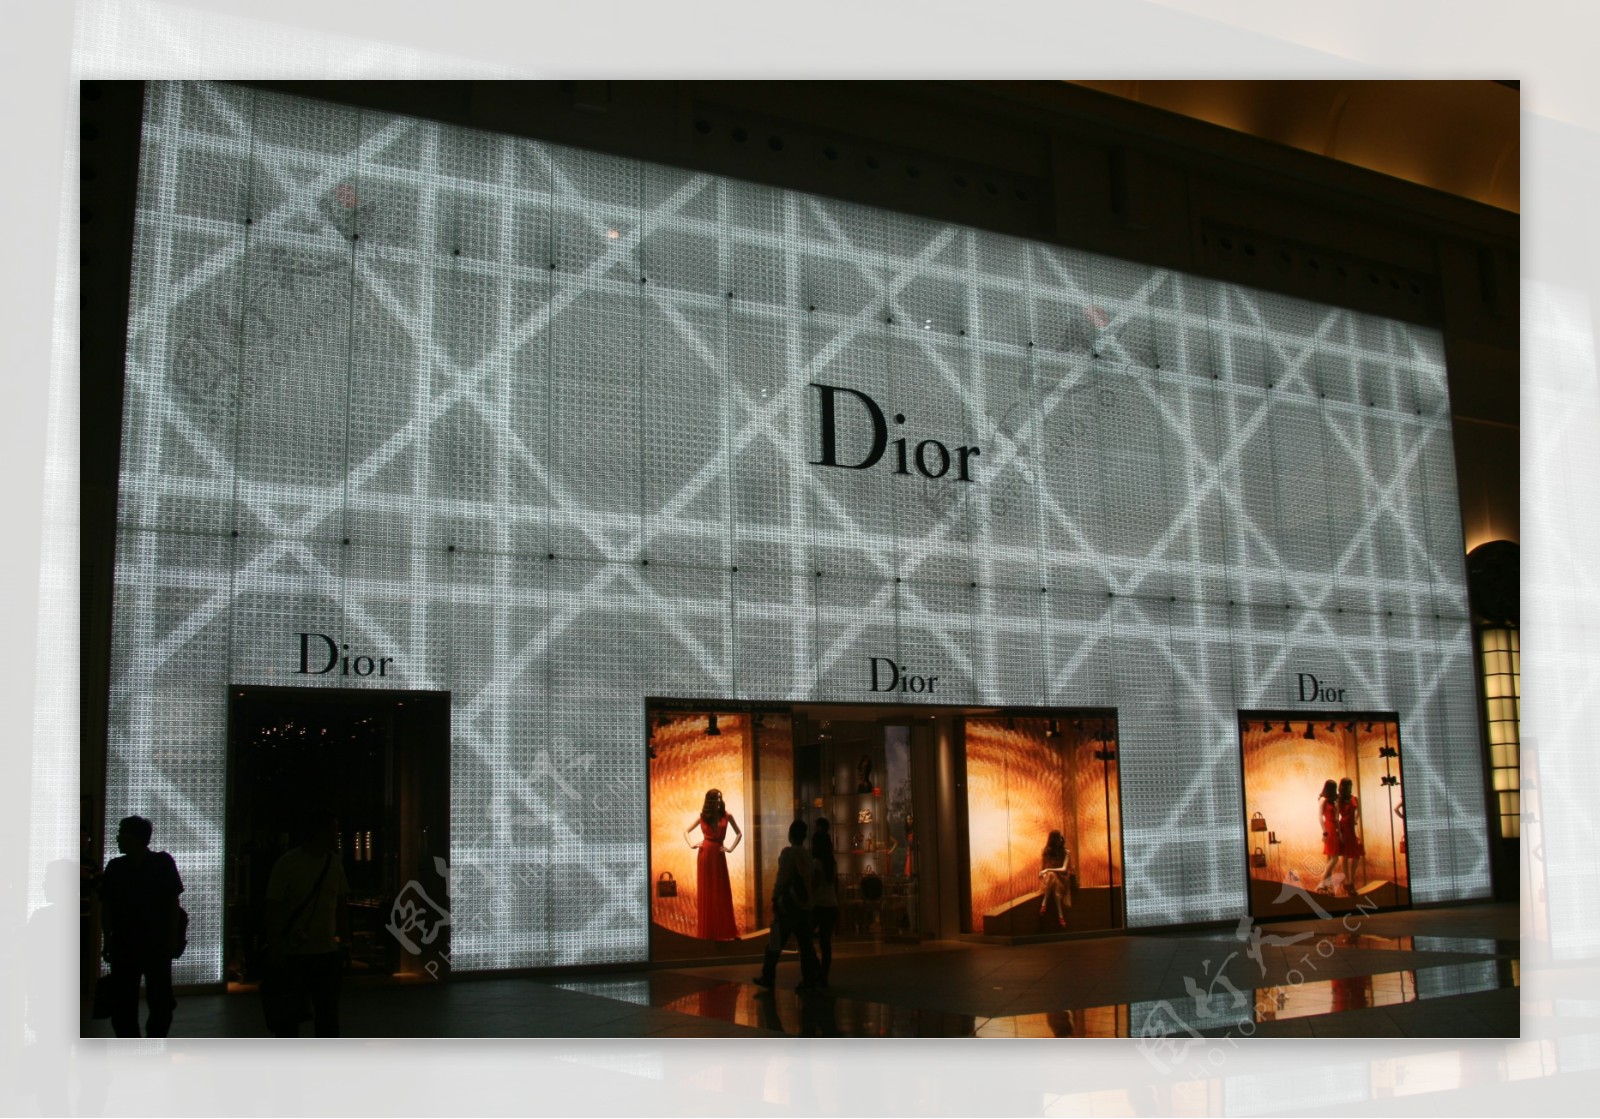 台北101大楼Dior店图片